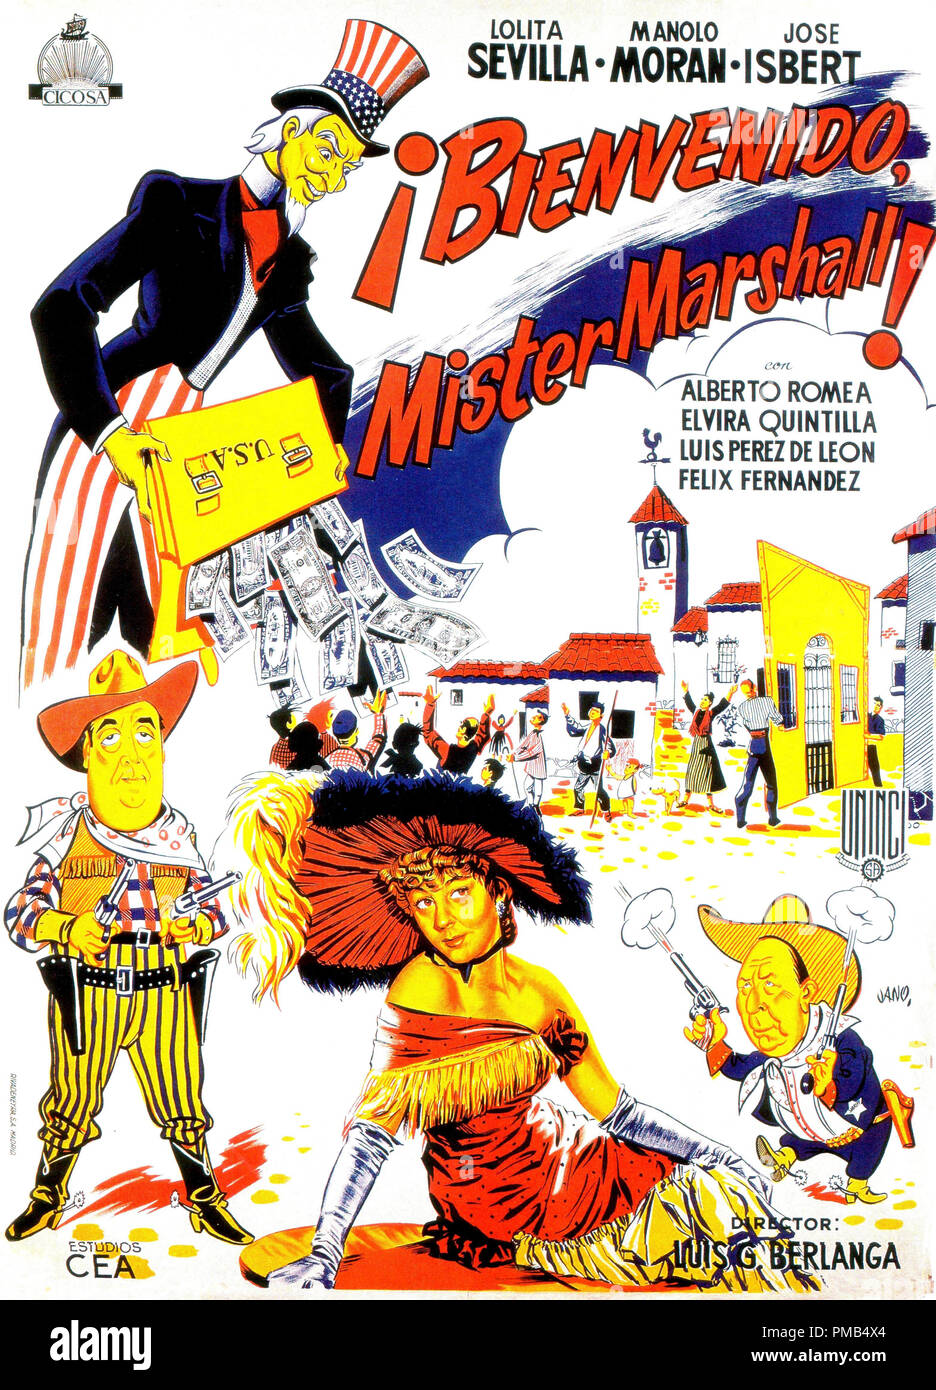 Lolita Sevilla, "Bienvenue Monsieur Marshall' alias 'Bienvenido Mister Marshall', de nous poster Art (1953) #  de référence de fichier 33371 422THA Banque D'Images